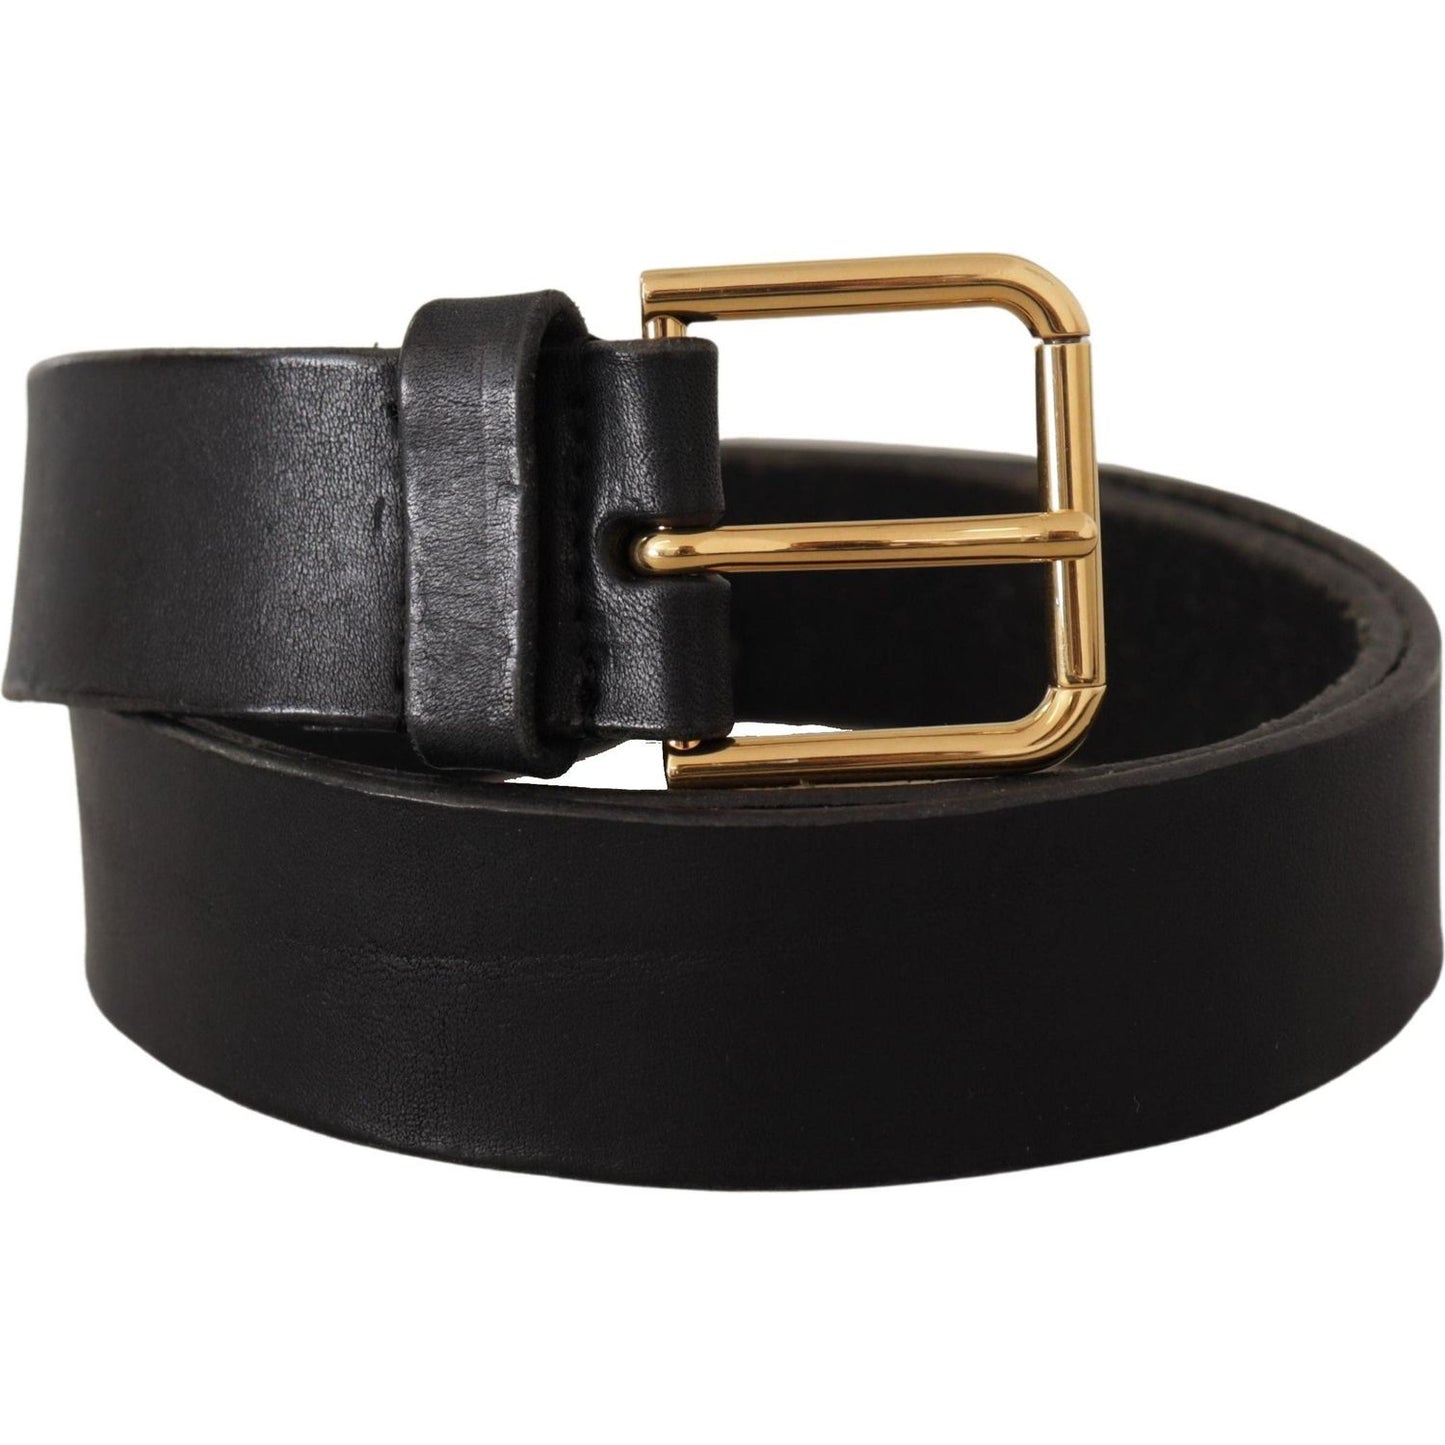 Dolce & Gabbana Elegant Black Leather Belt with Metal Buckle black-leather-gold-tone-logo-metal-buckle-belt